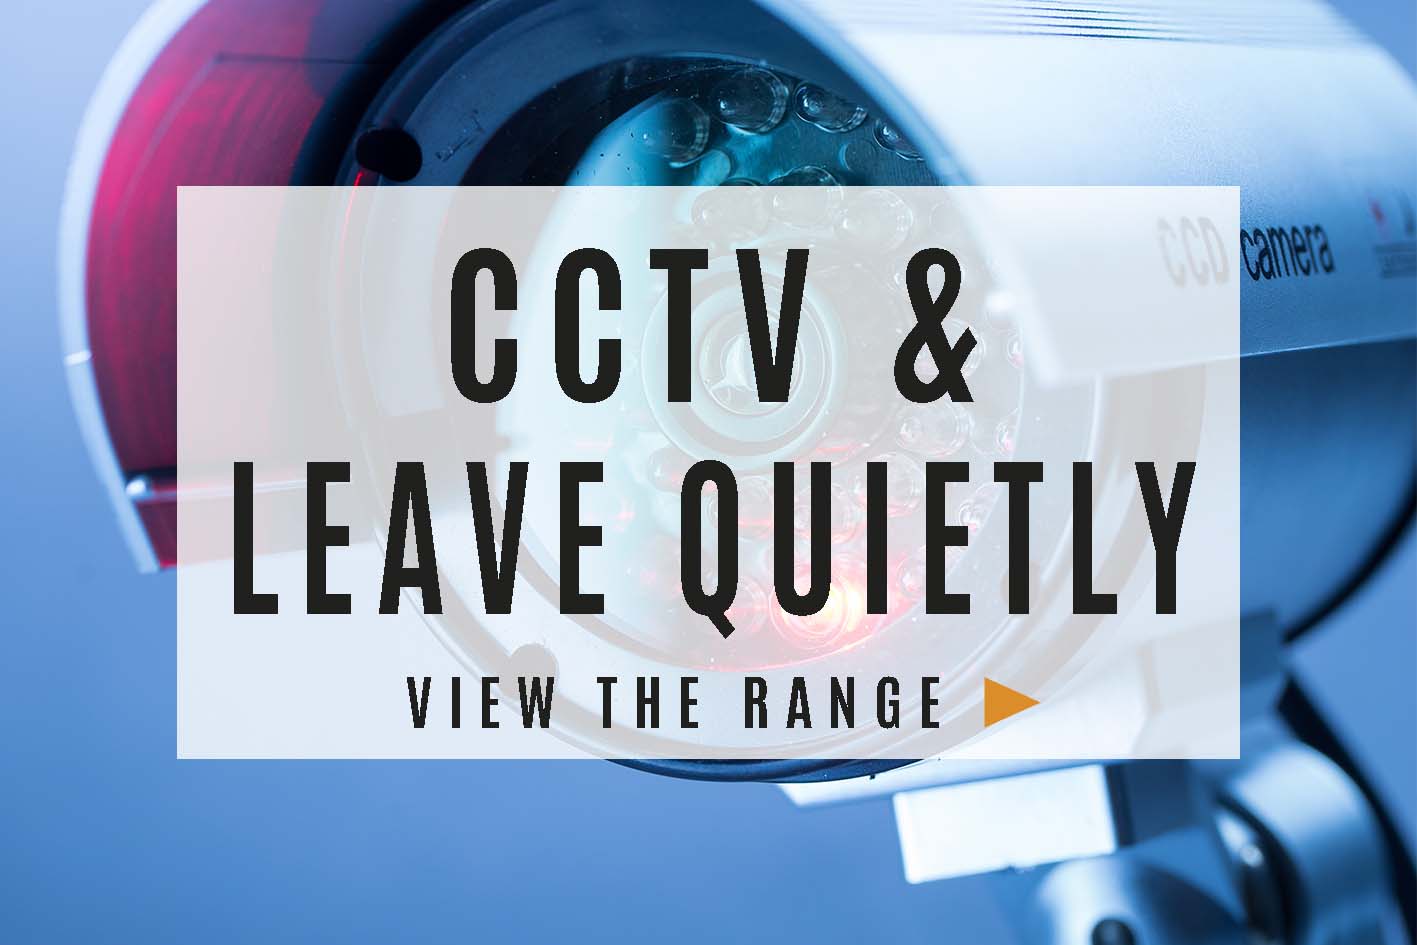 CCTV & Leave Quietly